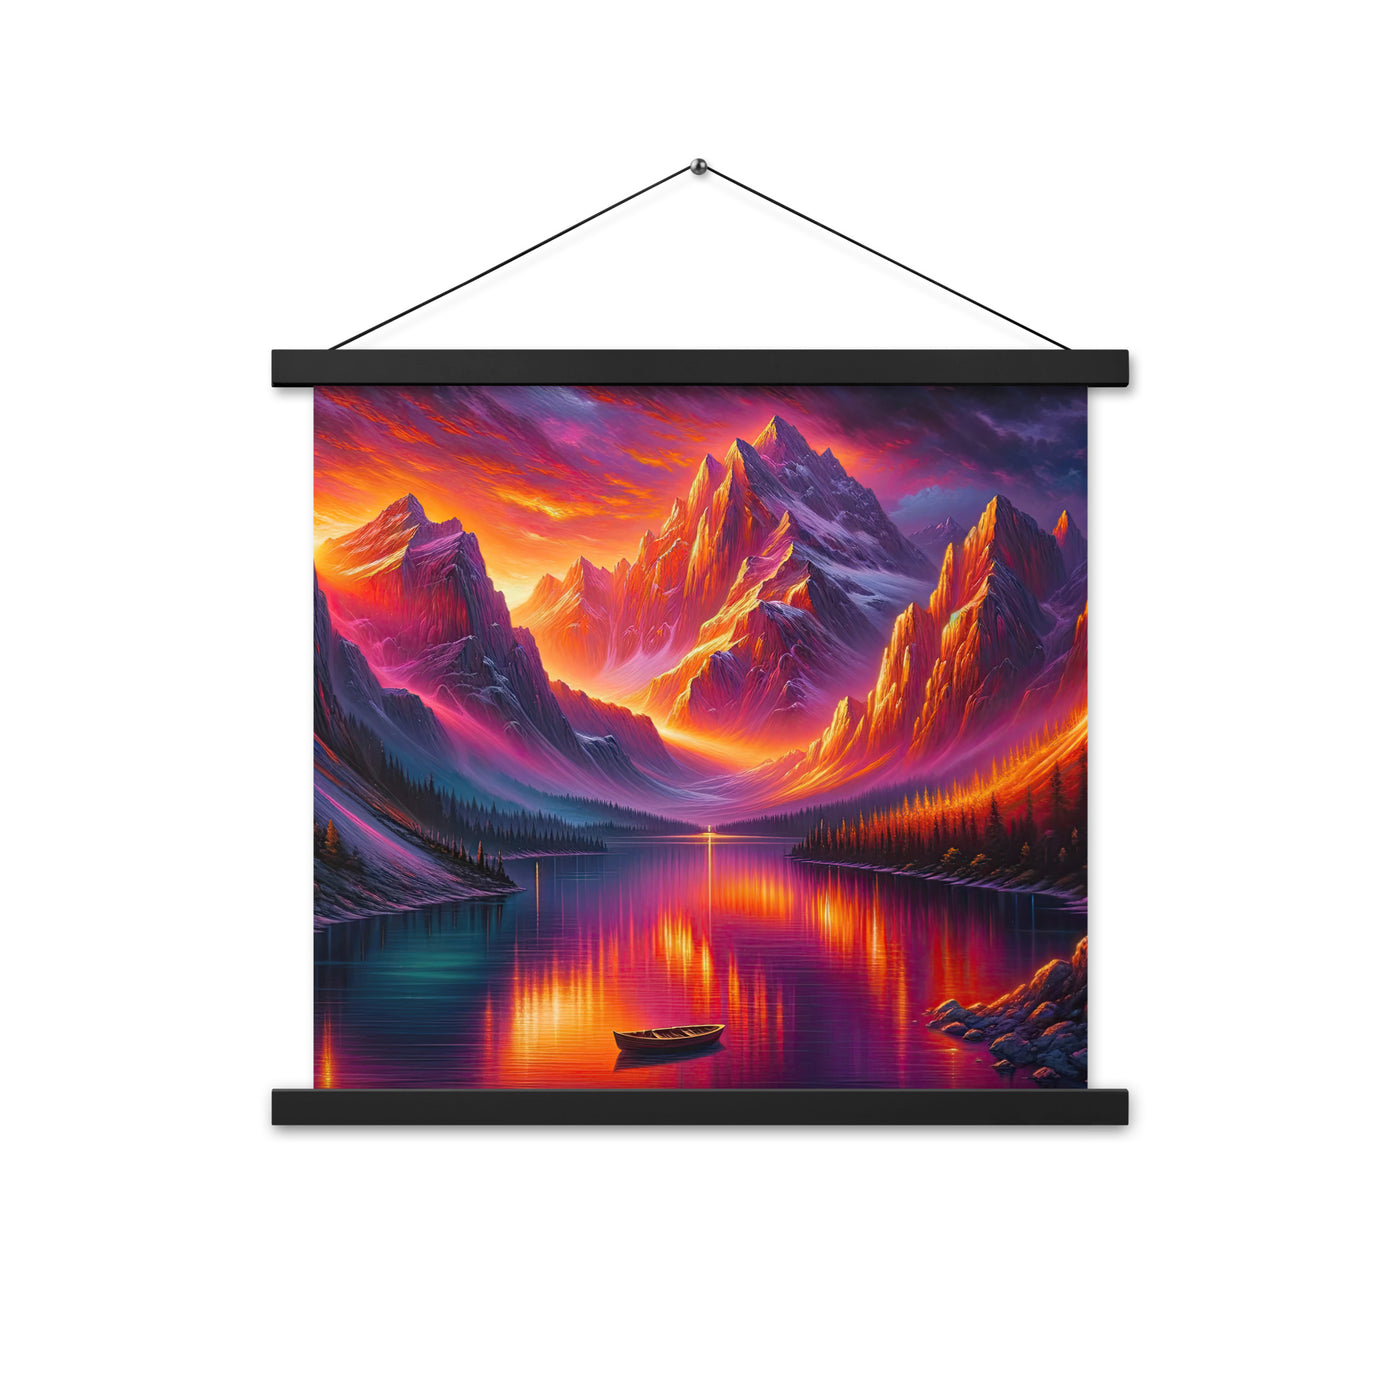 Ölgemälde eines Bootes auf einem Bergsee bei Sonnenuntergang, lebendige Orange-Lila Töne - Premium Poster mit Aufhängung berge xxx yyy zzz 45.7 x 45.7 cm